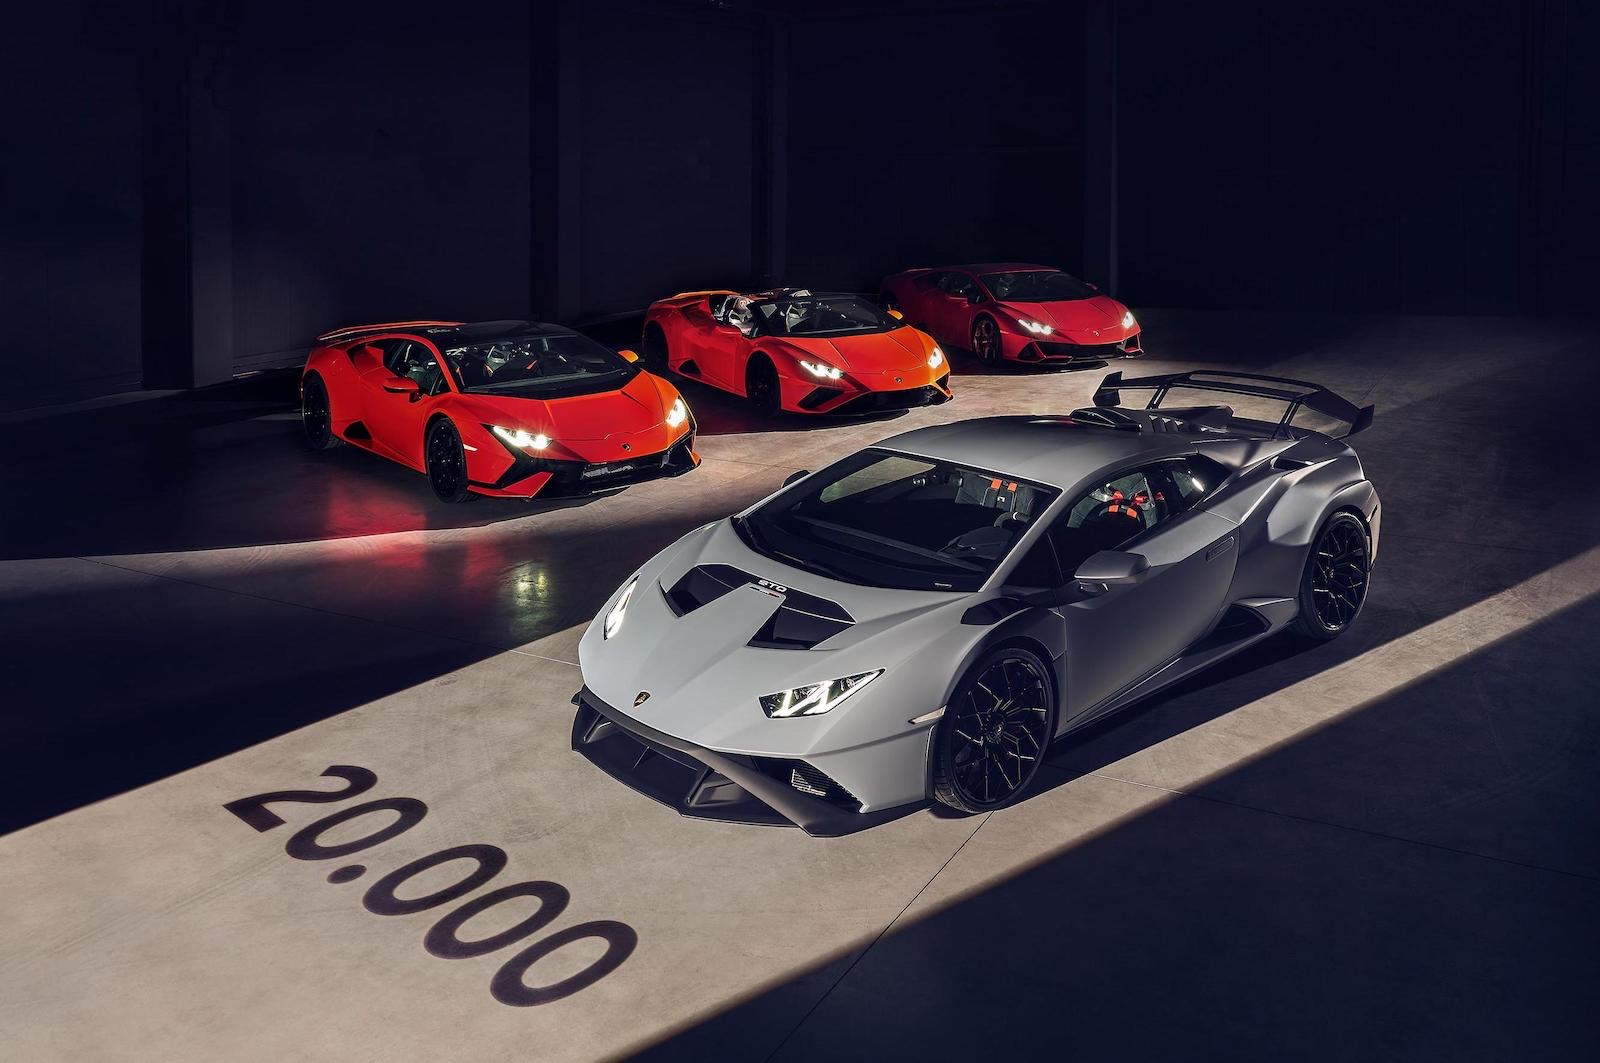 Lamborghini Huracan production surpasses 20,000 units milestone